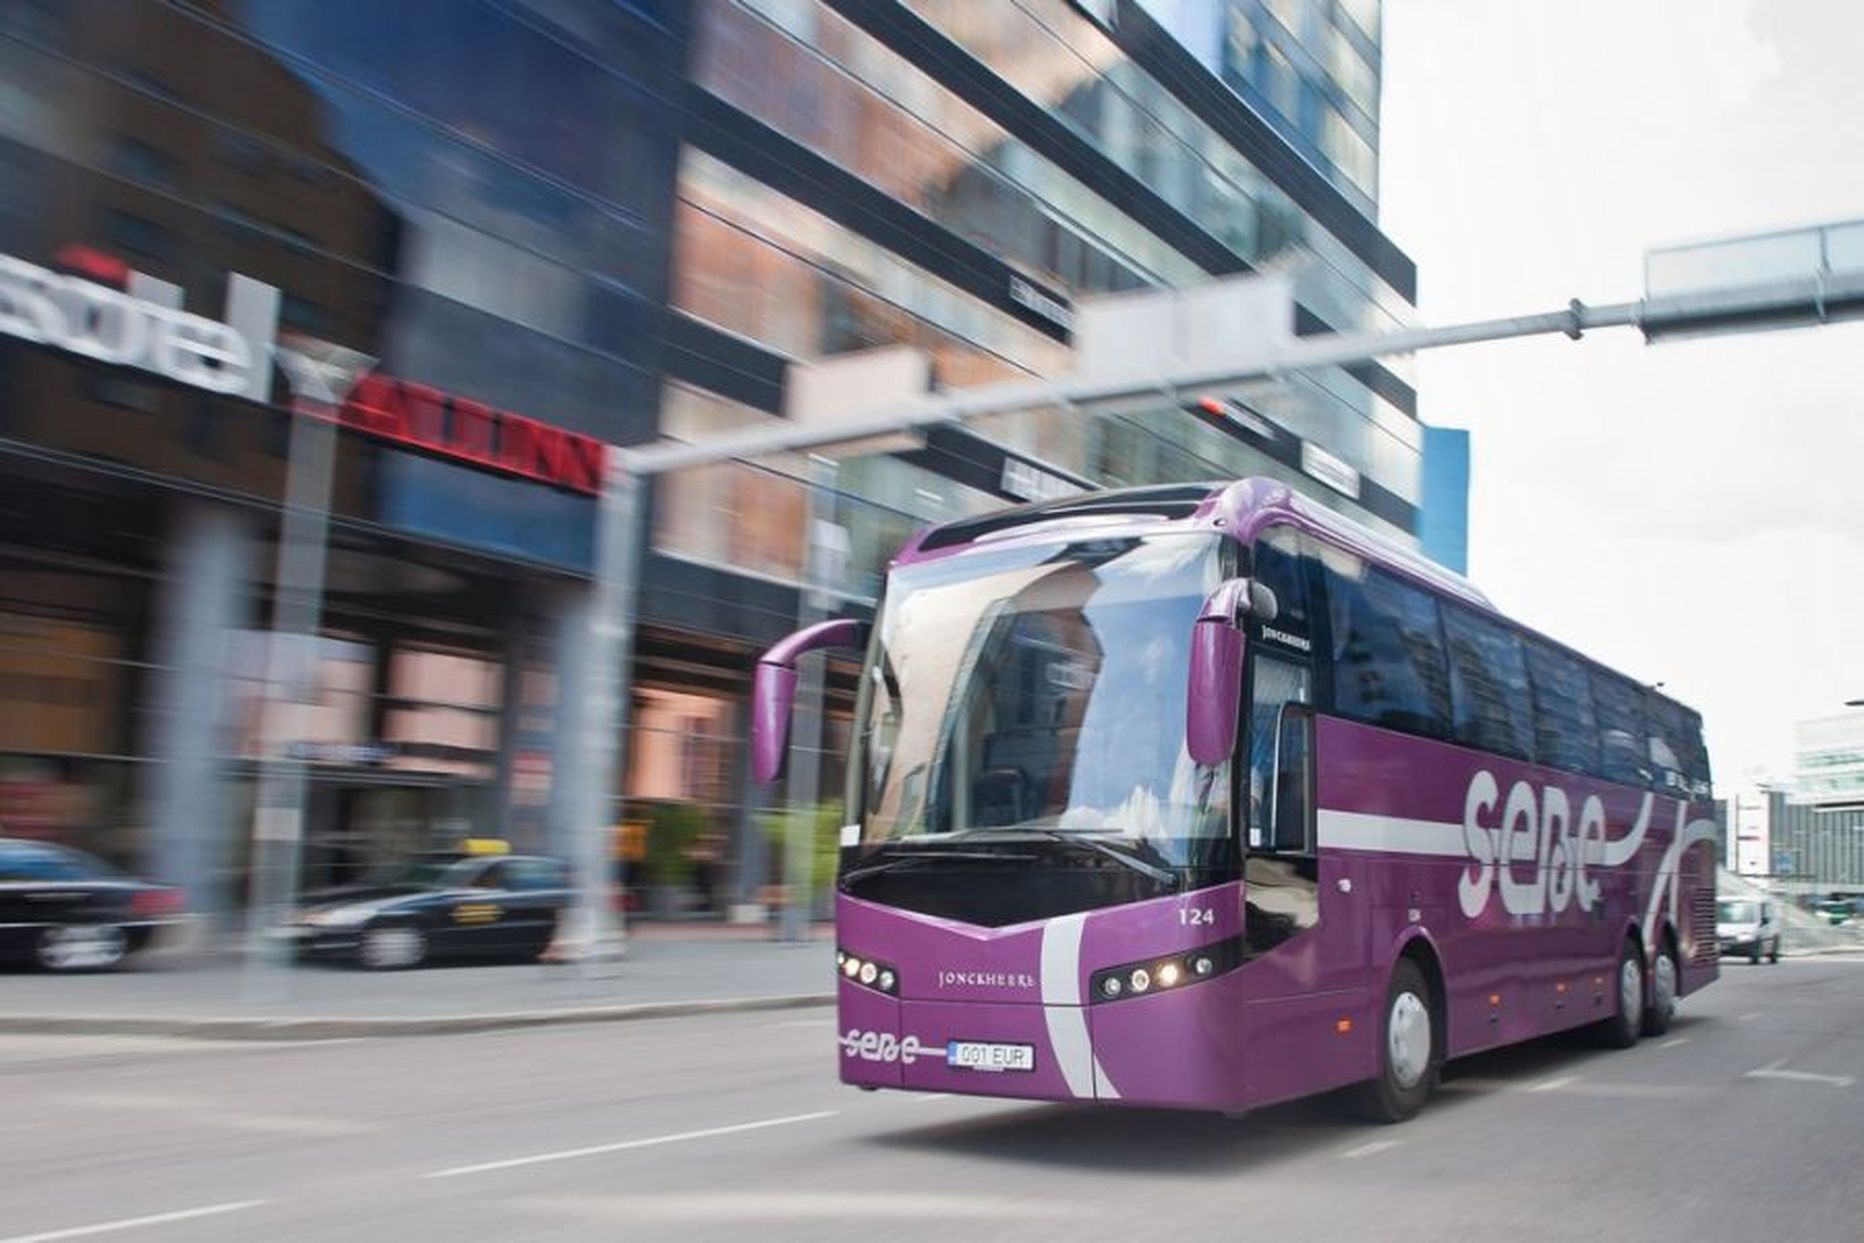 Kuigi Eesti bussiturul konkurents aina tiheneb, ei lase Eesti suuremad bussifirmad nina norgu, vaid meelitavad kliente uute pakkumistega.